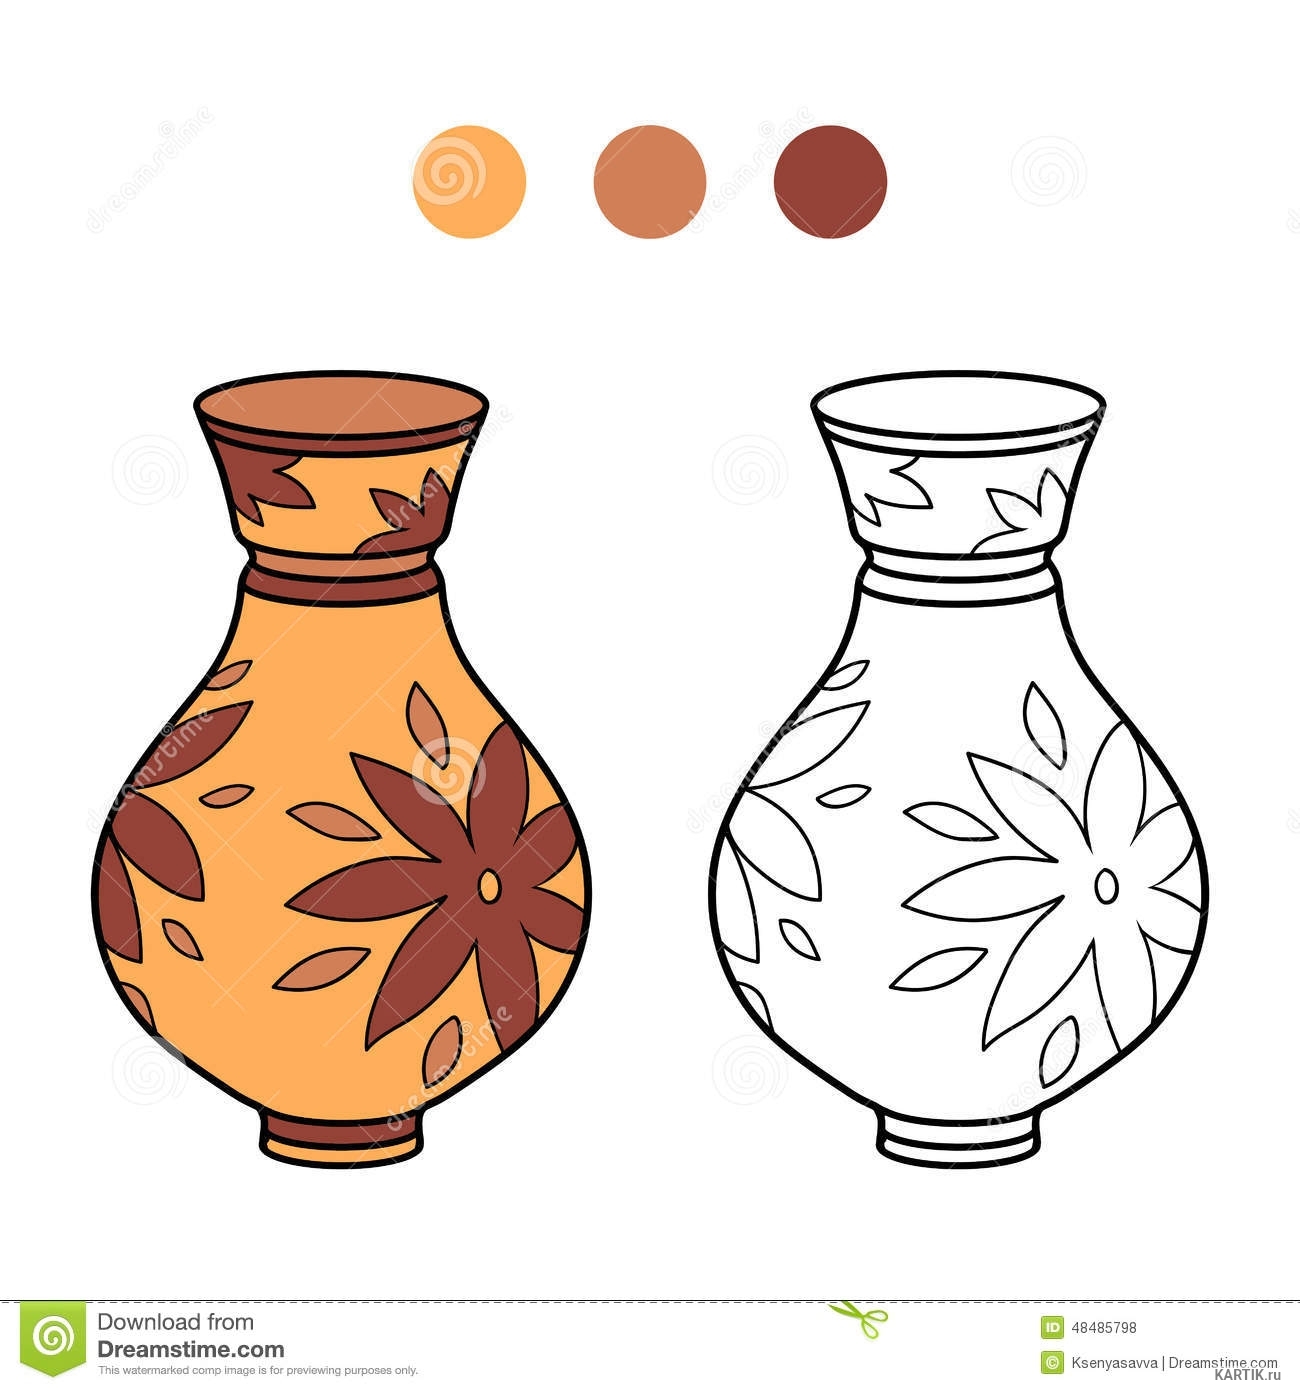 Декоративное рисование – составление узора для вазы.